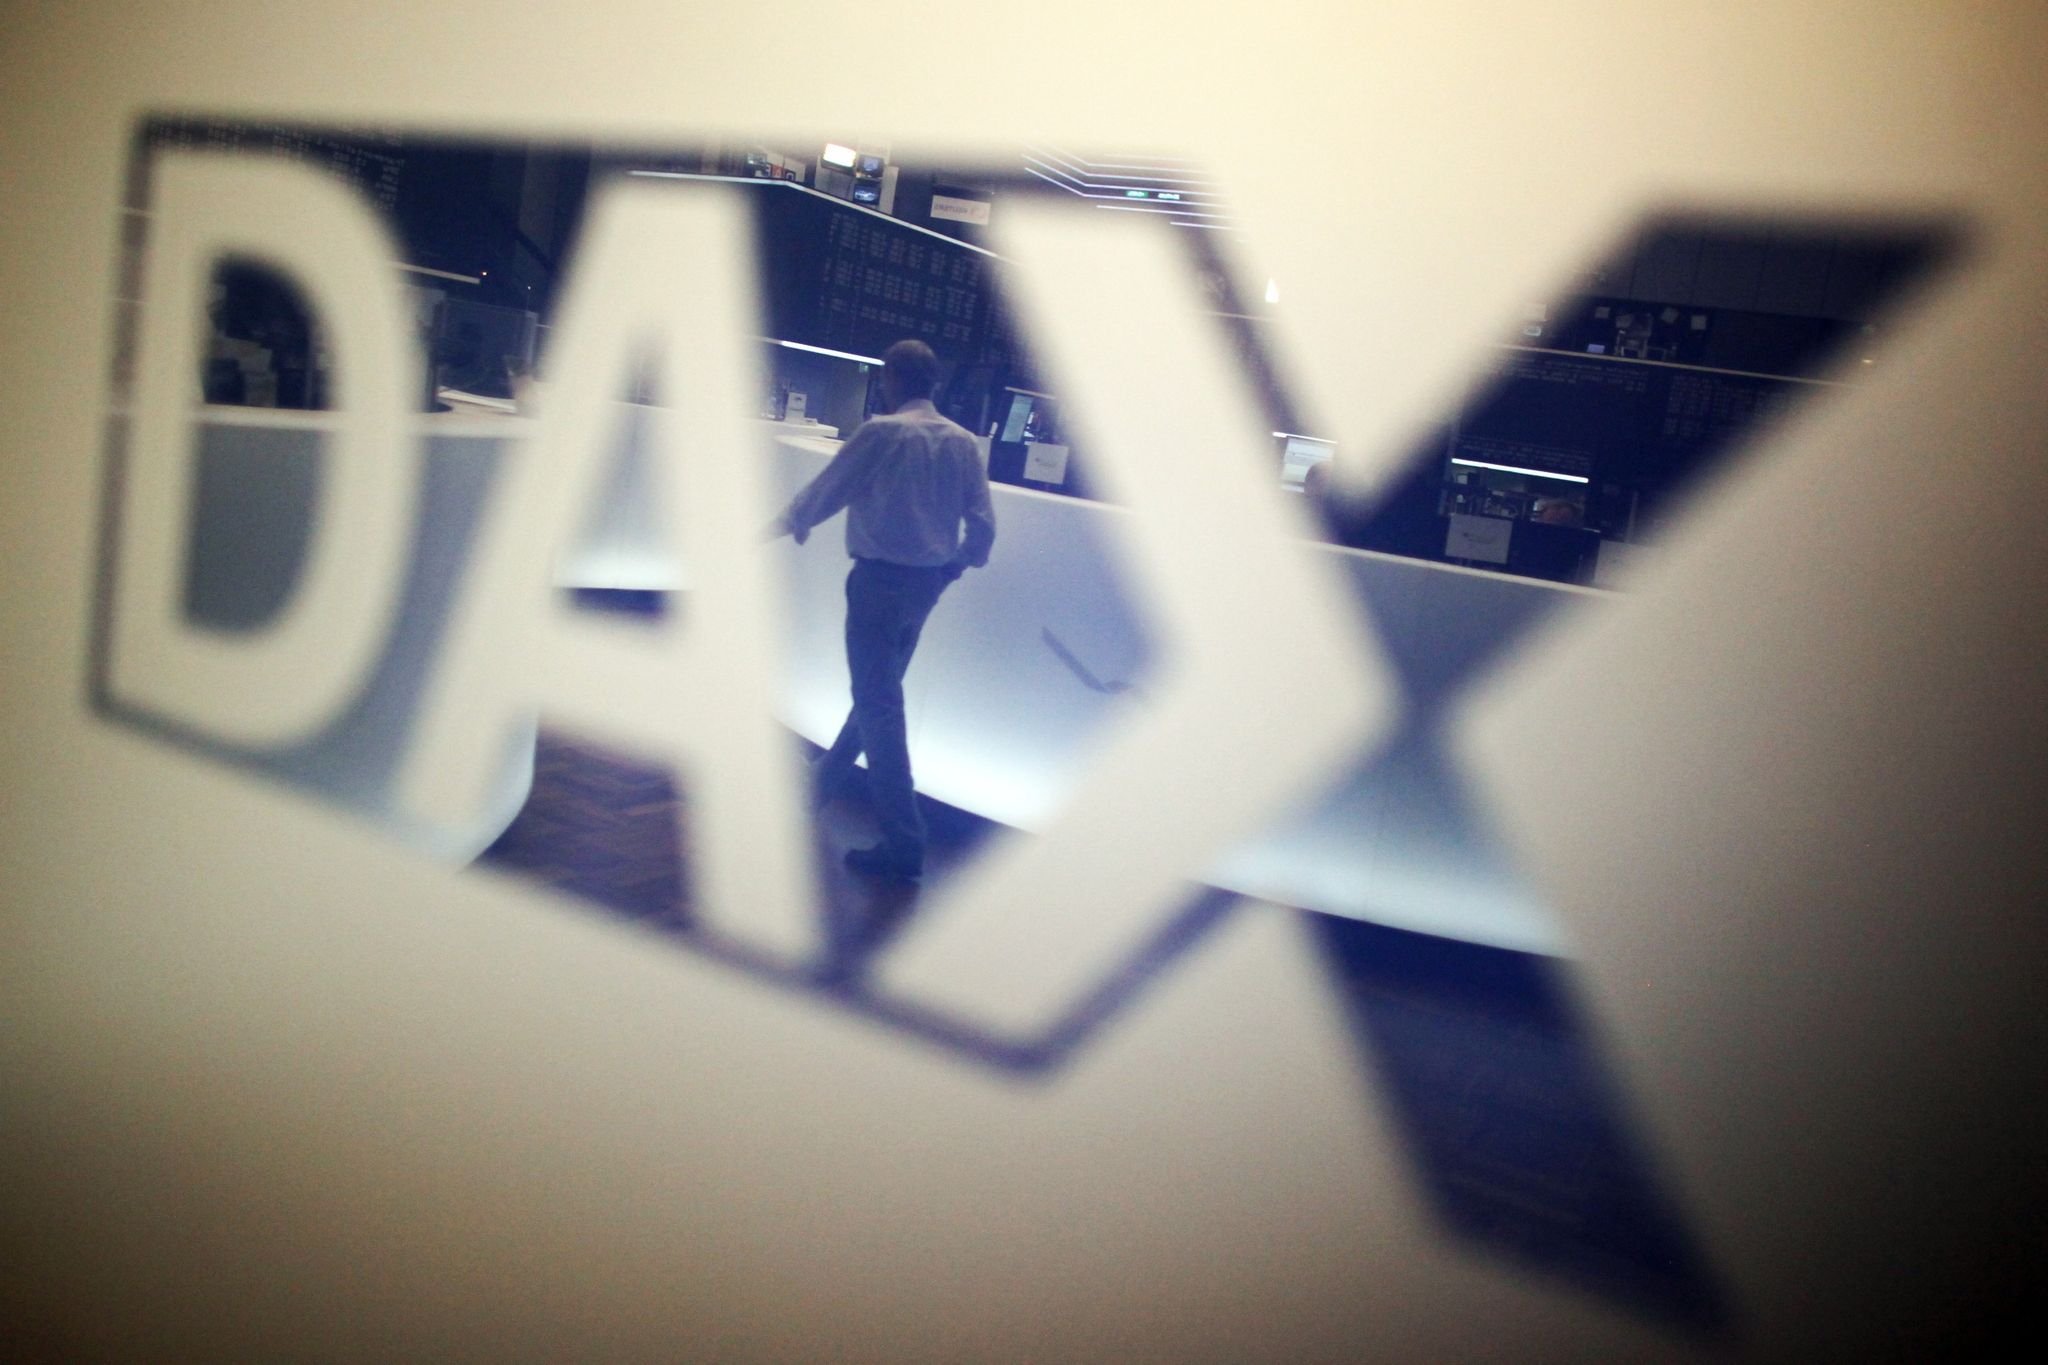 Dax vor Inflationsdaten weiter auf Erholungskurs